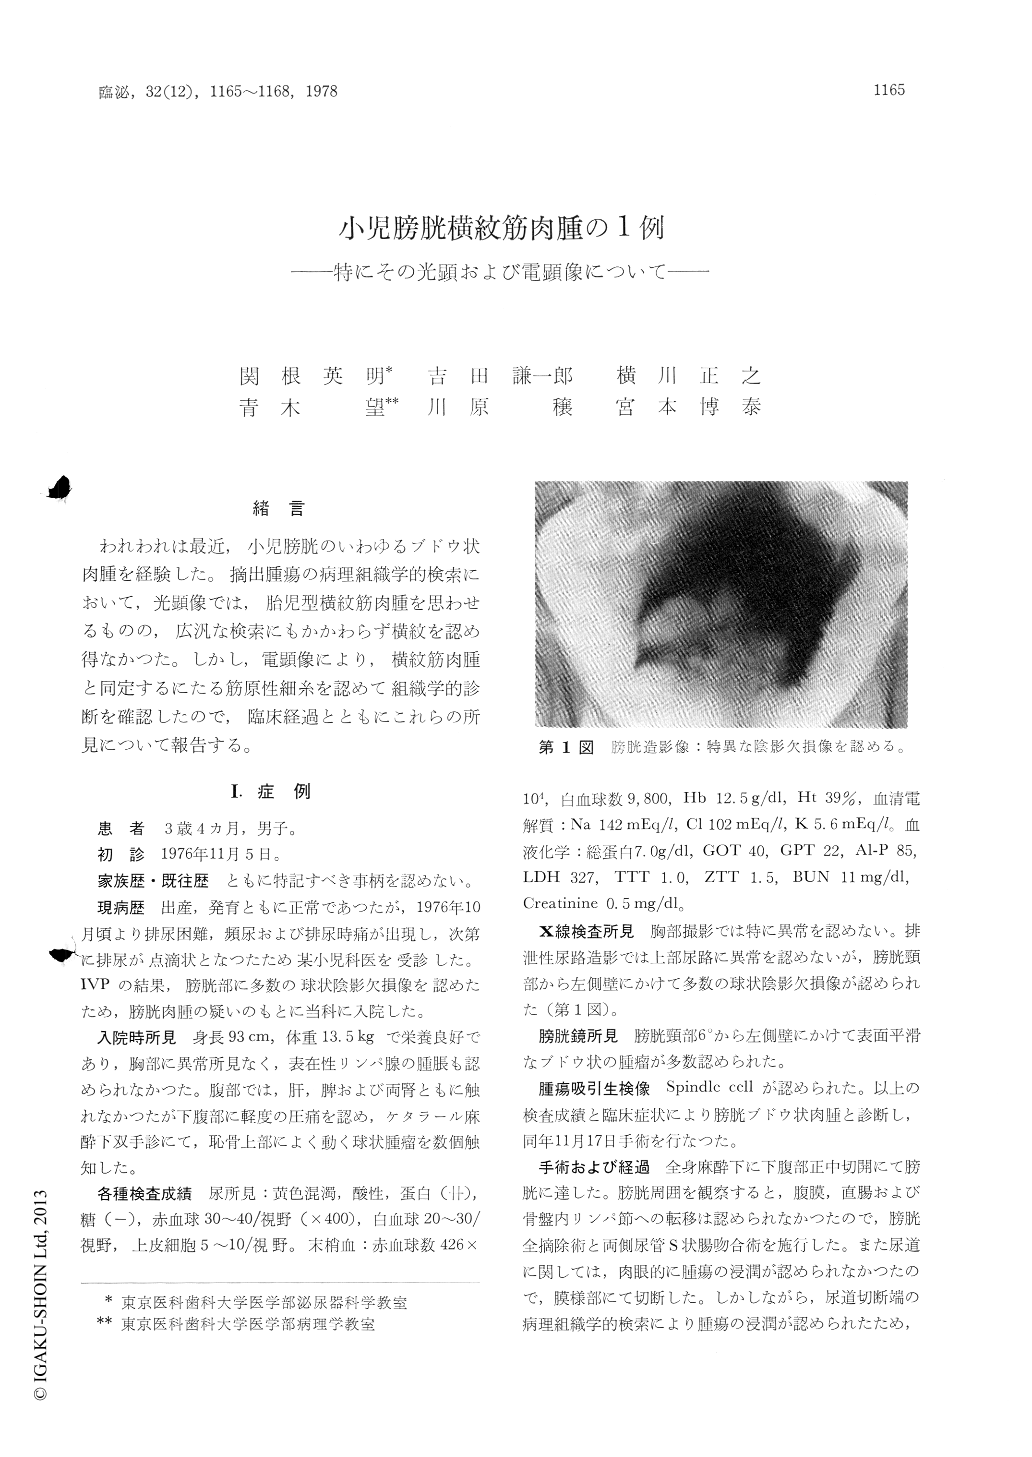 小児膀胱横紋筋肉腫の1例 特にその光顕および電顕像について 臨床泌尿器科 32巻12号 医書 Jp